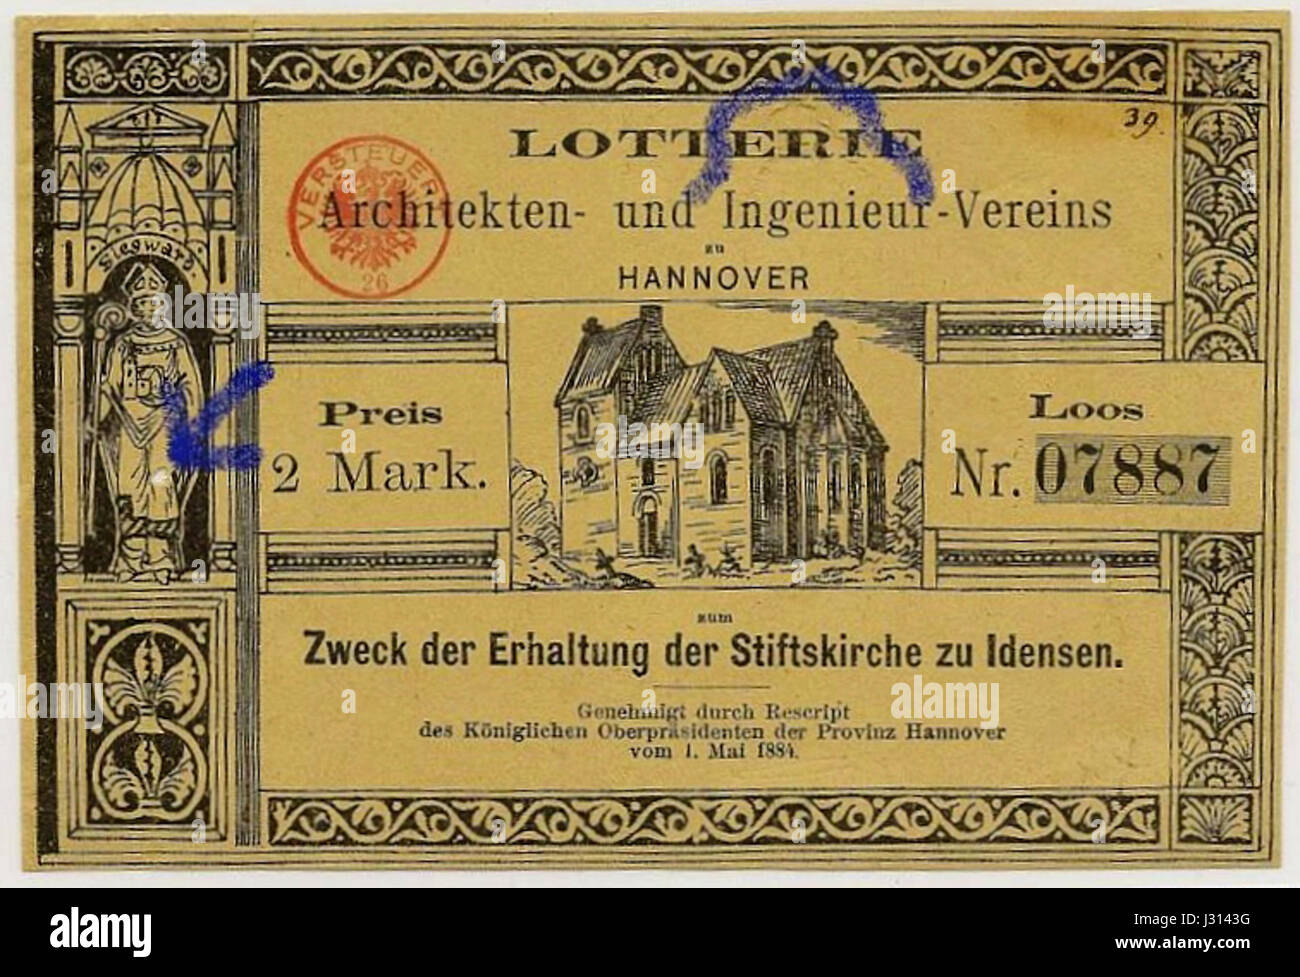 Architekten- und Ingenieurverein Hannover Lotterieschein zugunsten der Stiftskirche Idensen 1884 Bildseite Stock Photo